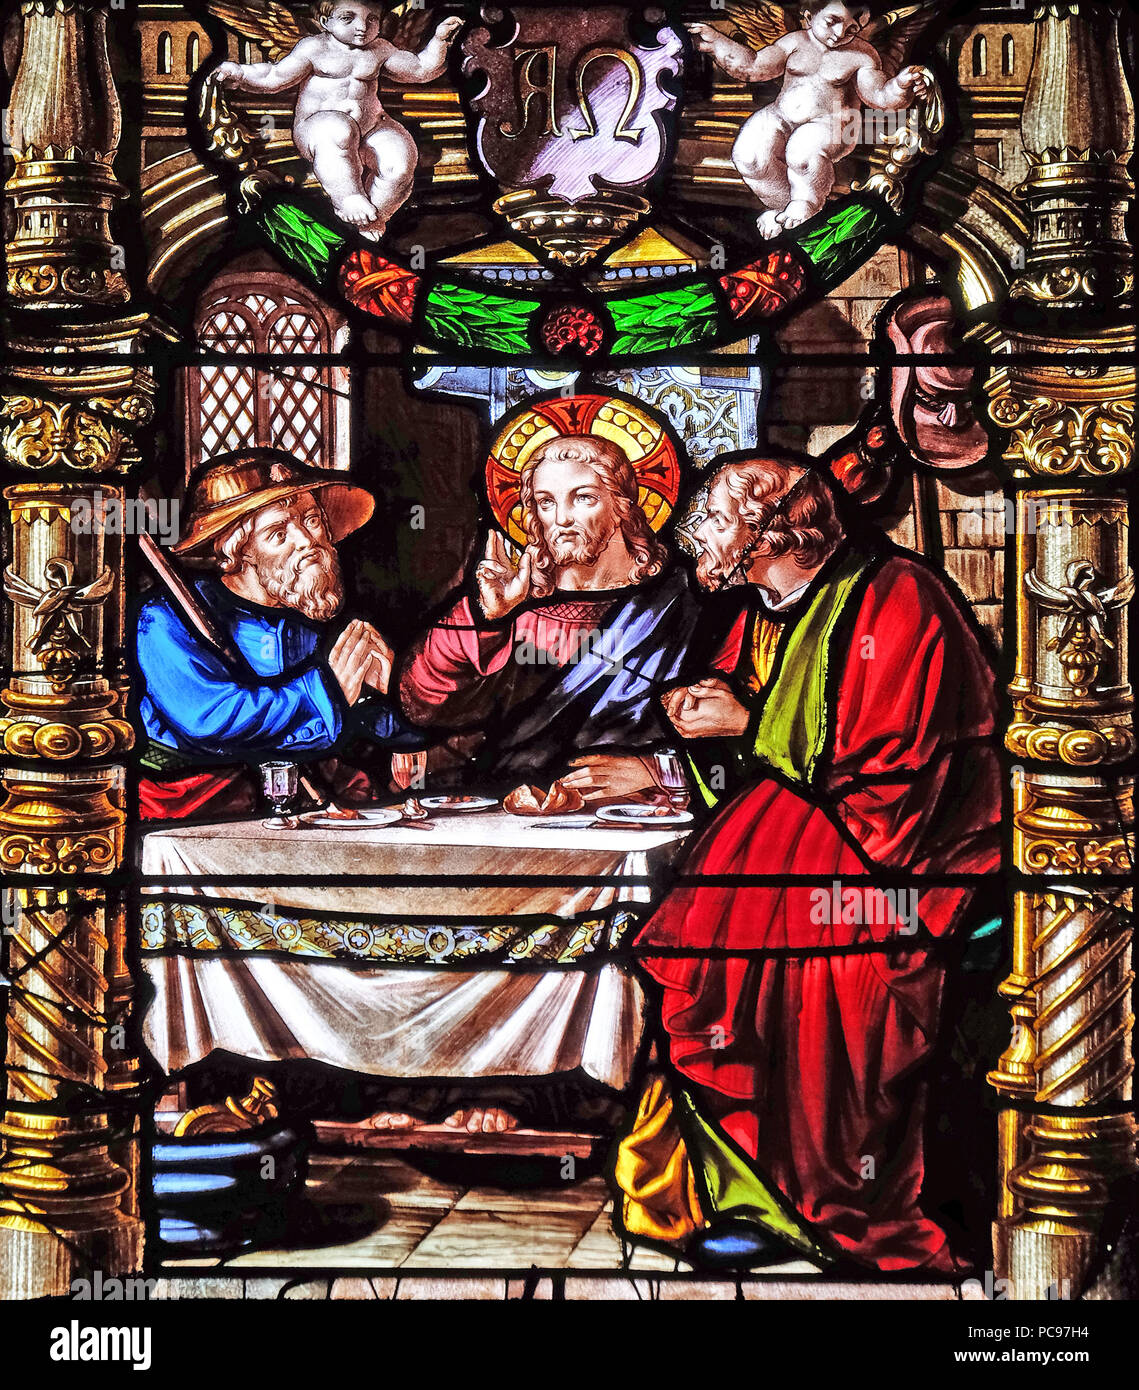 Le souper à Emmaüs, vitraux de la Saint Gervais et Saint Protais Église, Paris, France Banque D'Images